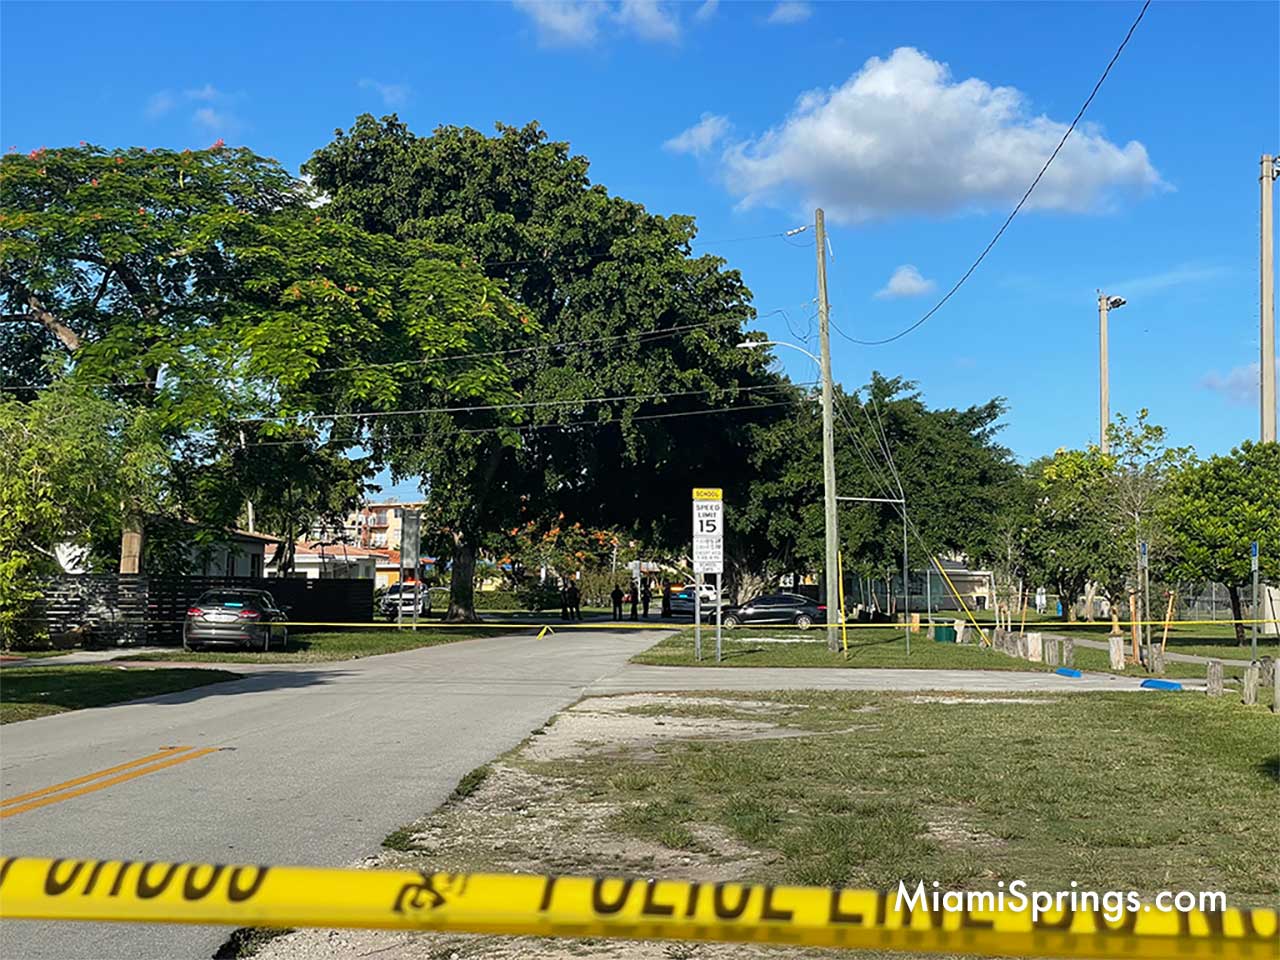 Miami Springs Police Investigation near Stafford Park